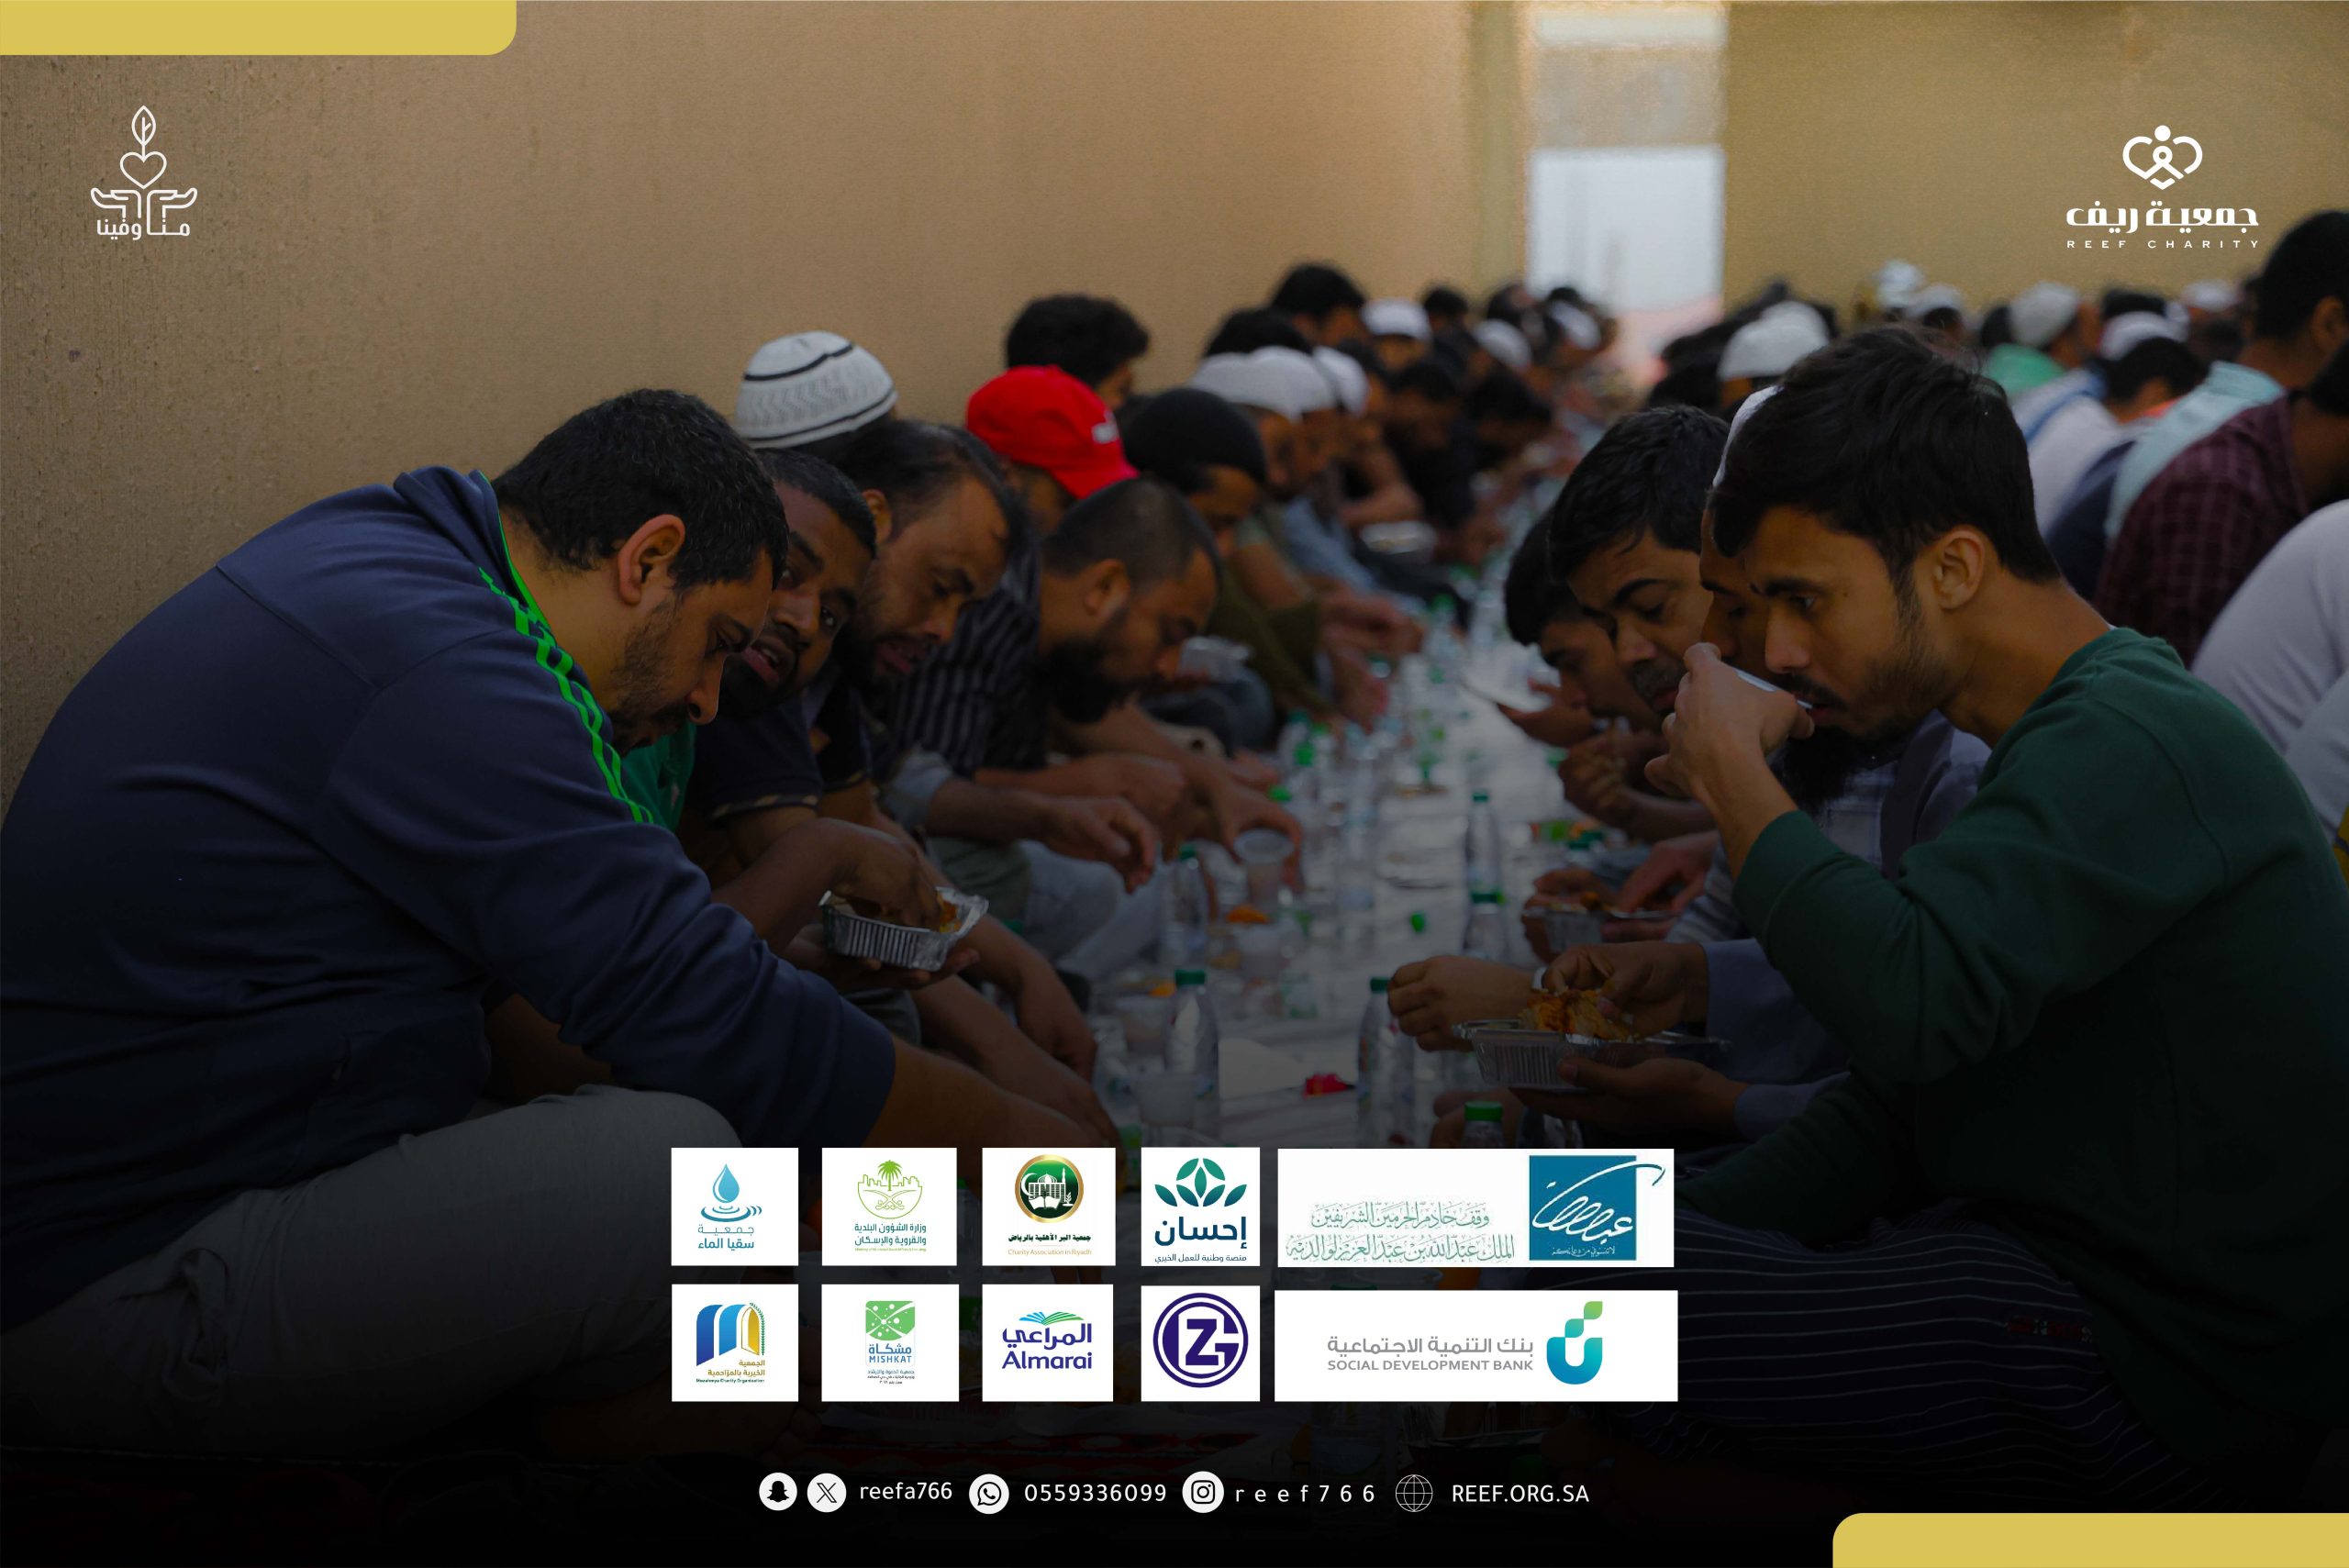 جمعية ريف تُفطّر 153,000 صائم خلال شهر رمضان المبارك